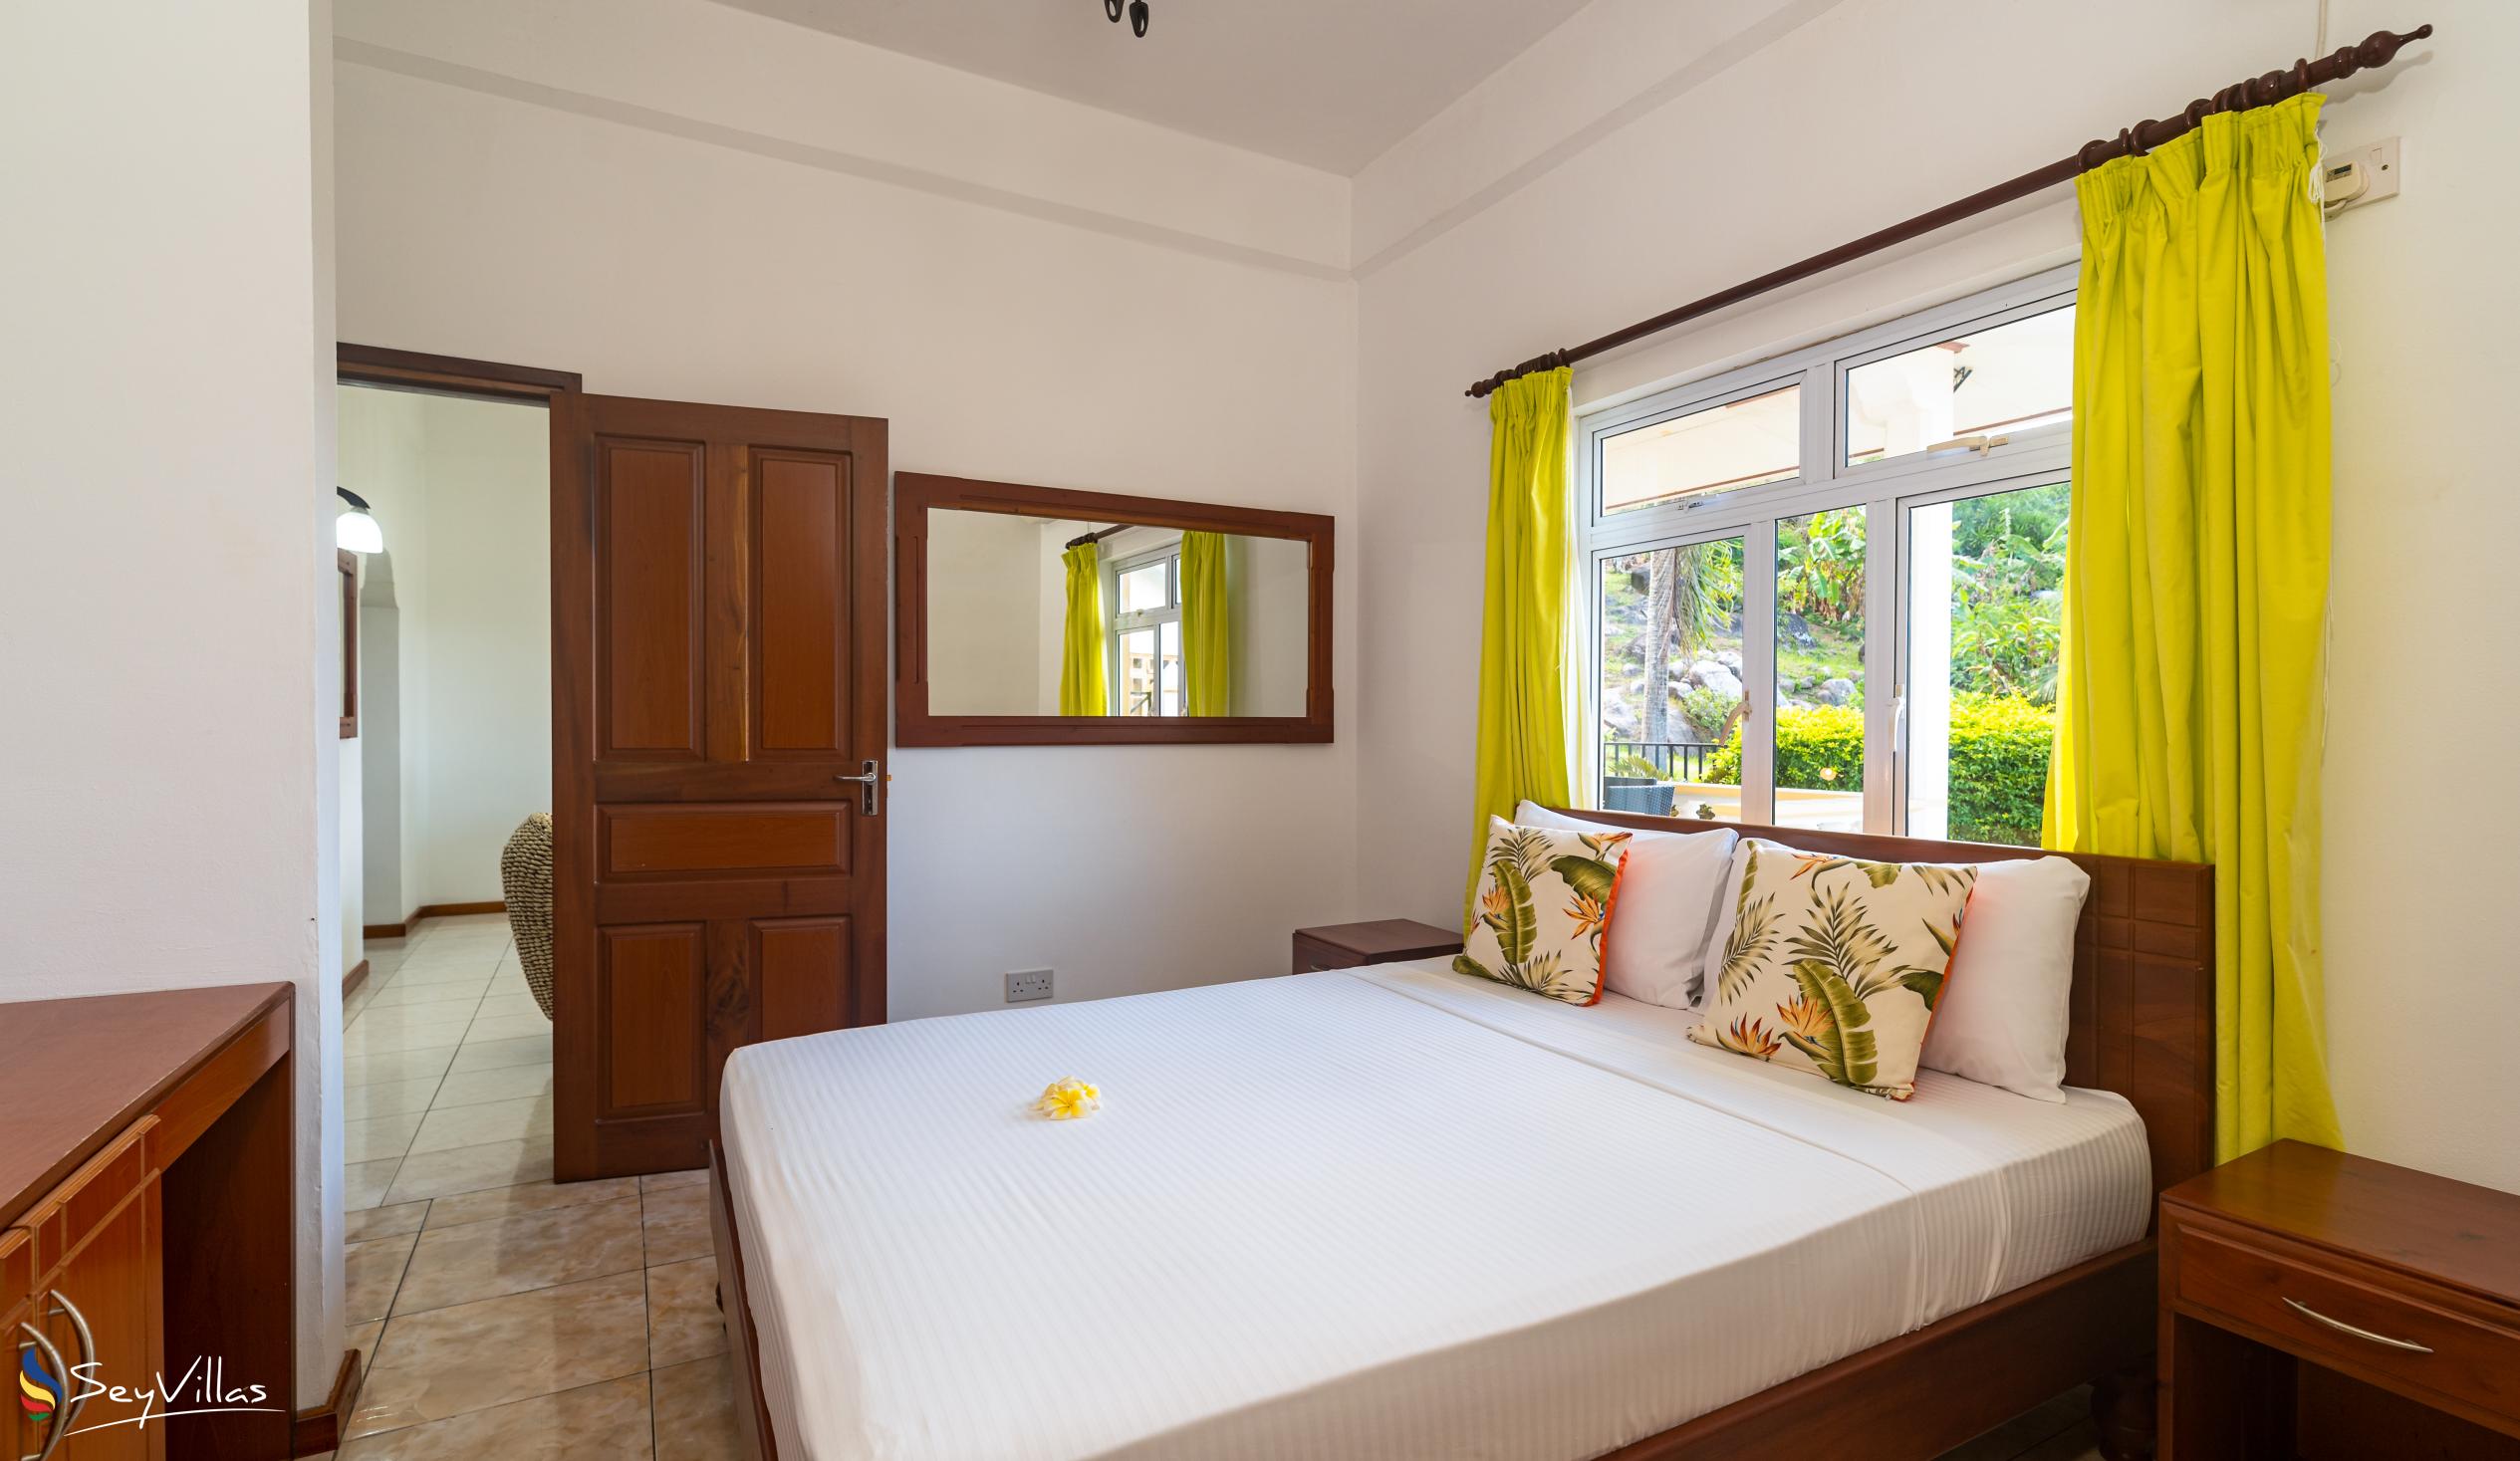 Foto 22: East Horizon - Appartement vue sur le jardin - 2 chambres - Mahé (Seychelles)